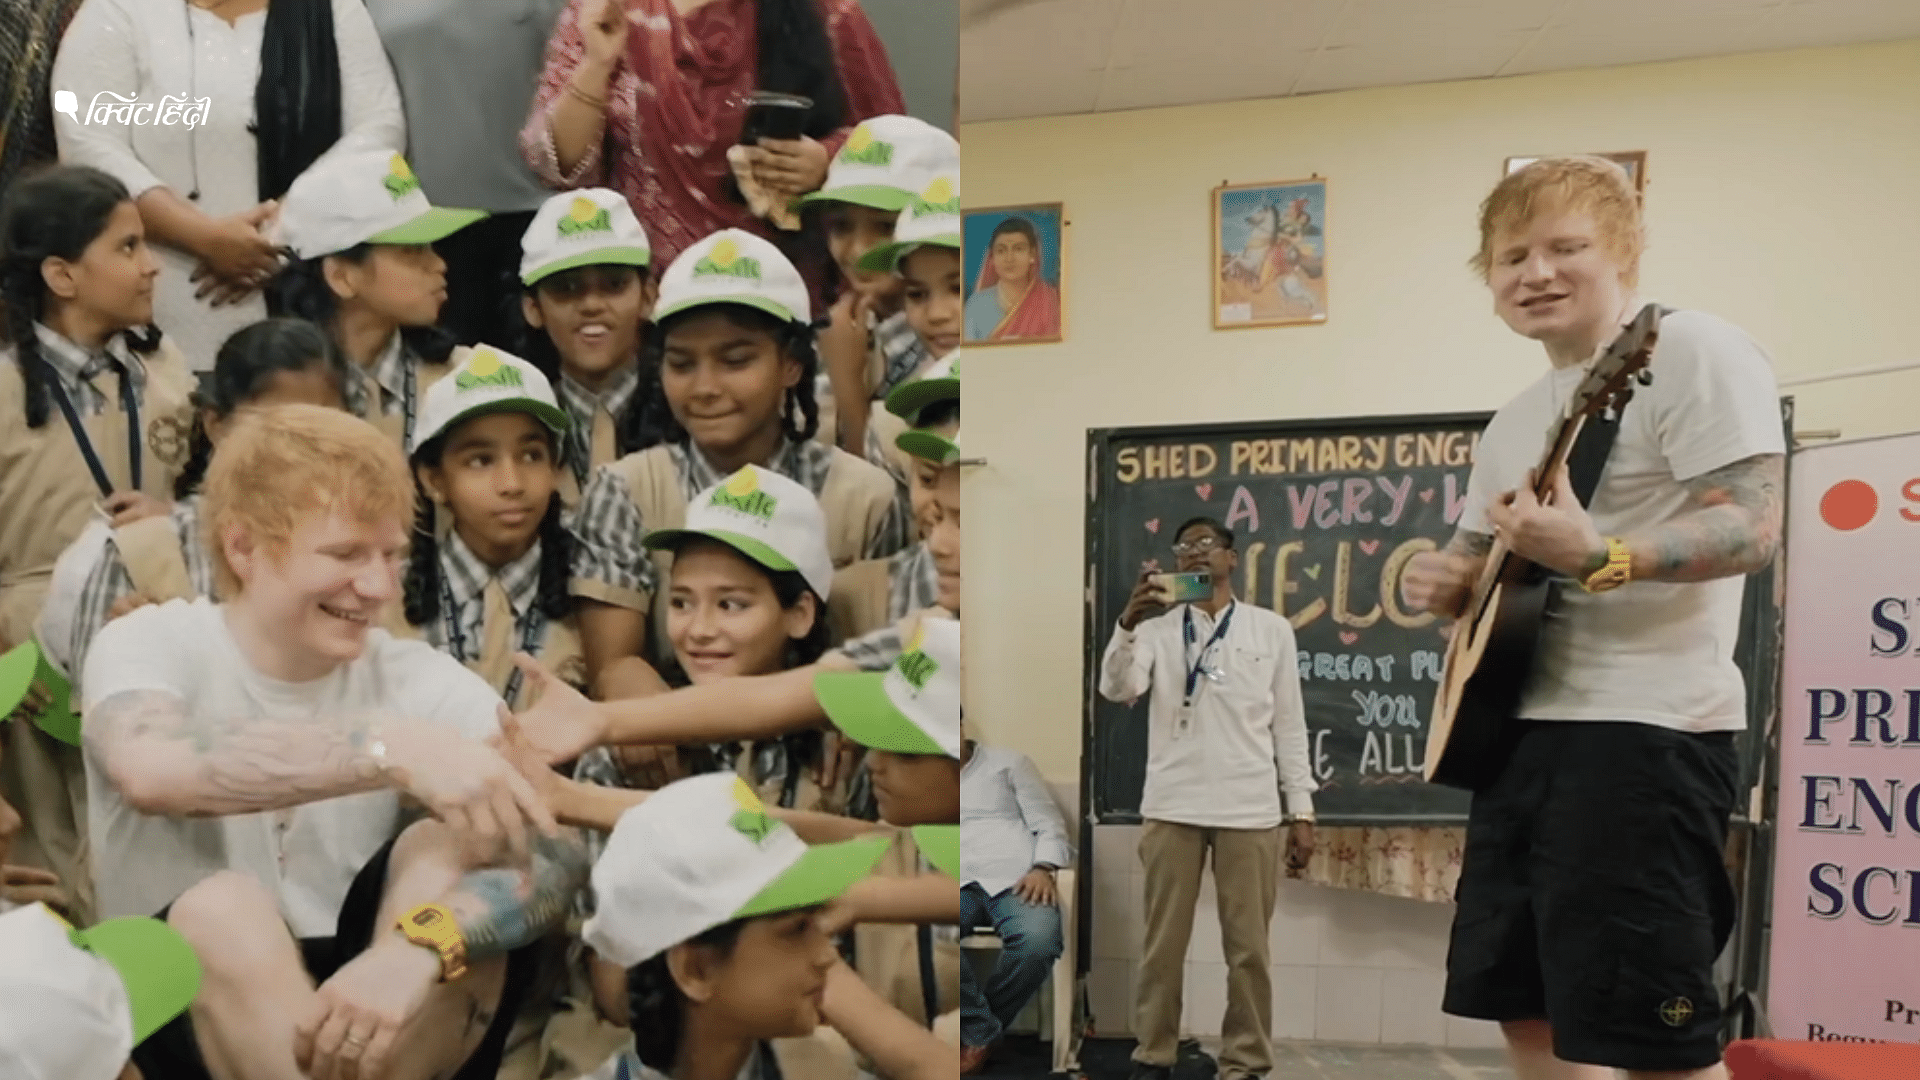 <div class="paragraphs"><p>Ed Sheeran की मस्ती की पाठशाला, मुंबई में स्कूली बच्चों संग गाया 'शेप ऑफ यू' |Photos</p></div>